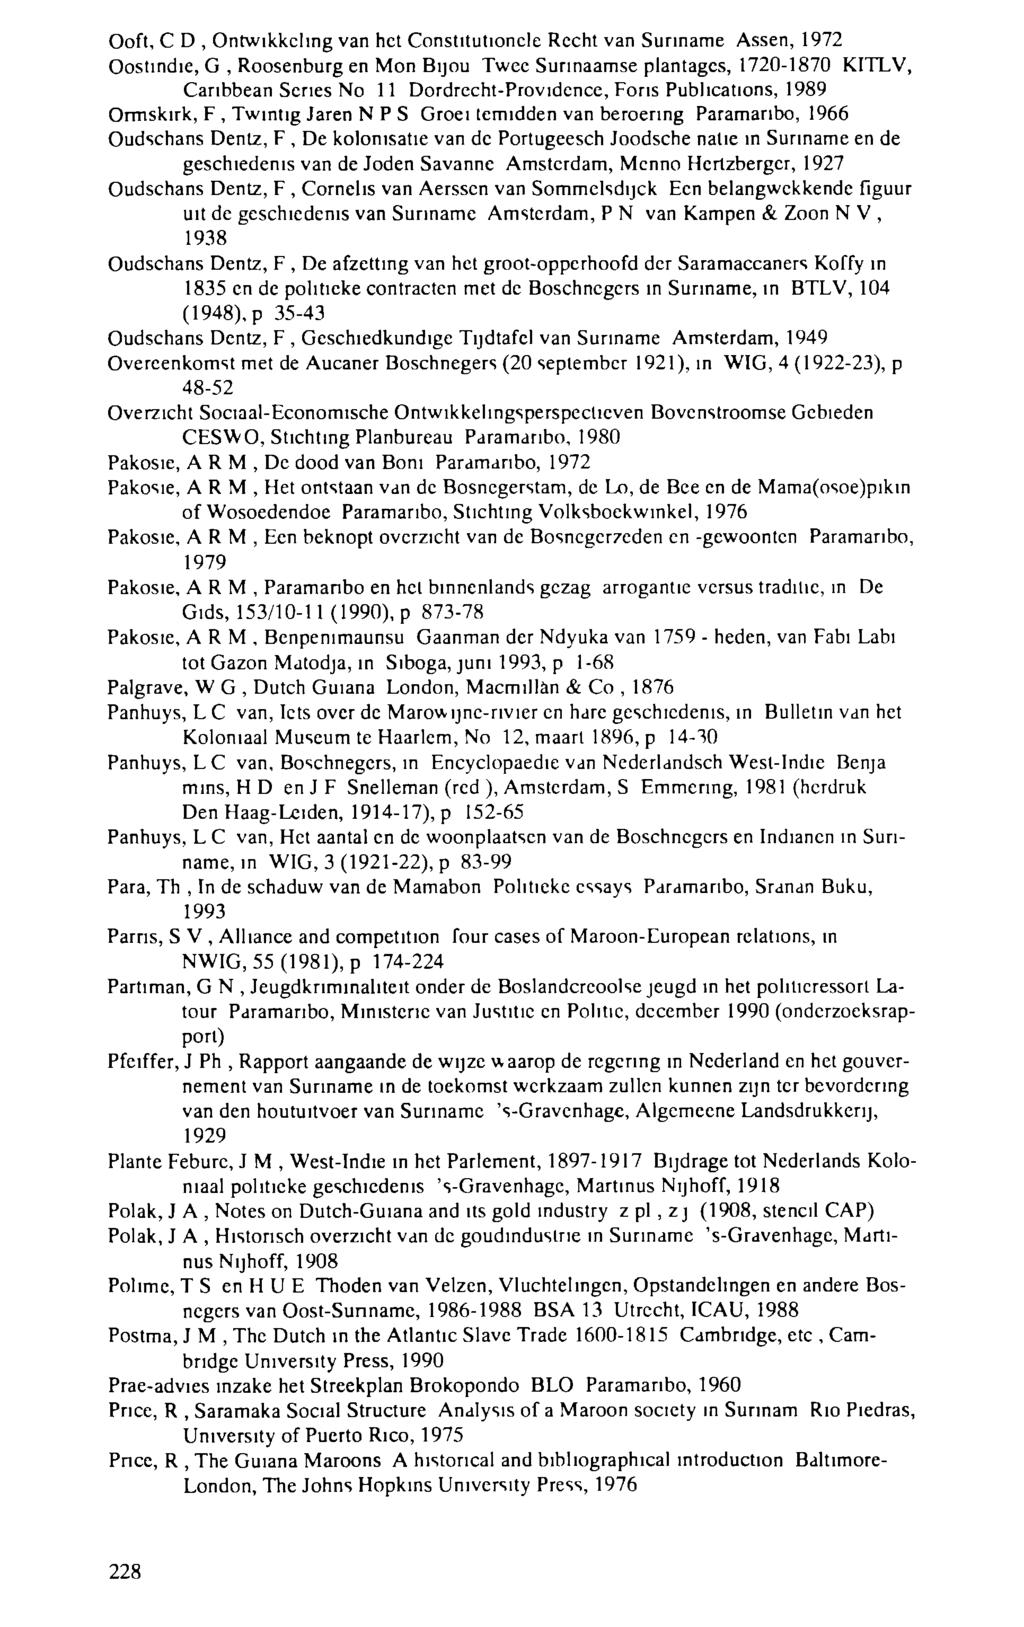 Ooft, С D, Ontwikkeling van het Constitutionele Recht van Suriname Assen, 1972 Oostindie, G, Roosenburg en Mon Bijou Twee Surinaamse plantages, 1720-1870 KITLV, Caribbean Series No 11